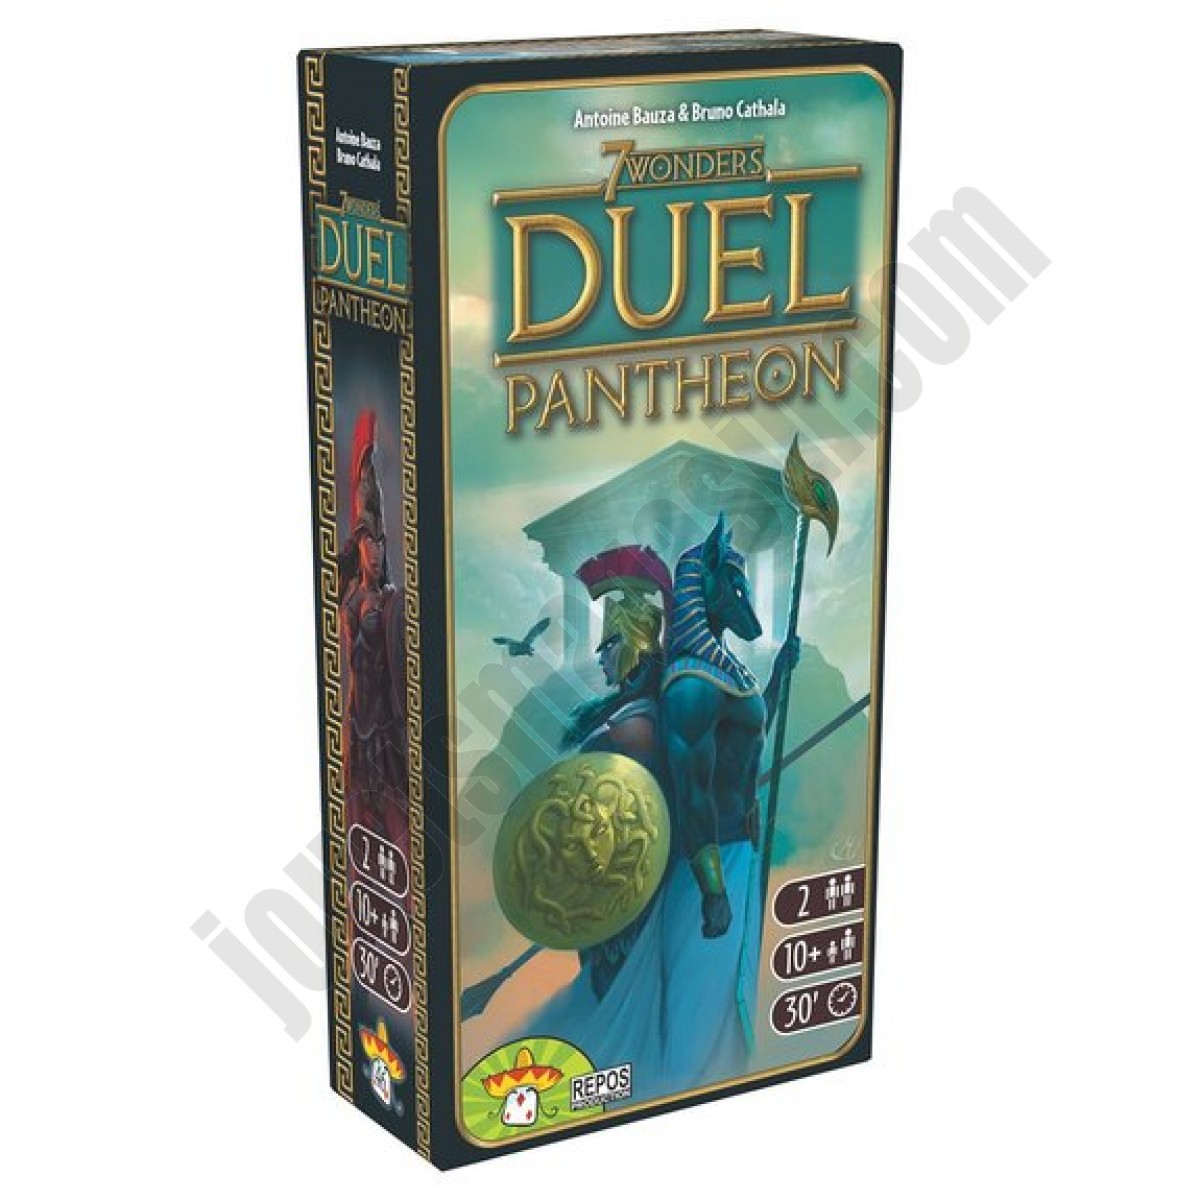 7 Wonders Duel Pantheon En promotion - 7 Wonders Duel Pantheon En promotion